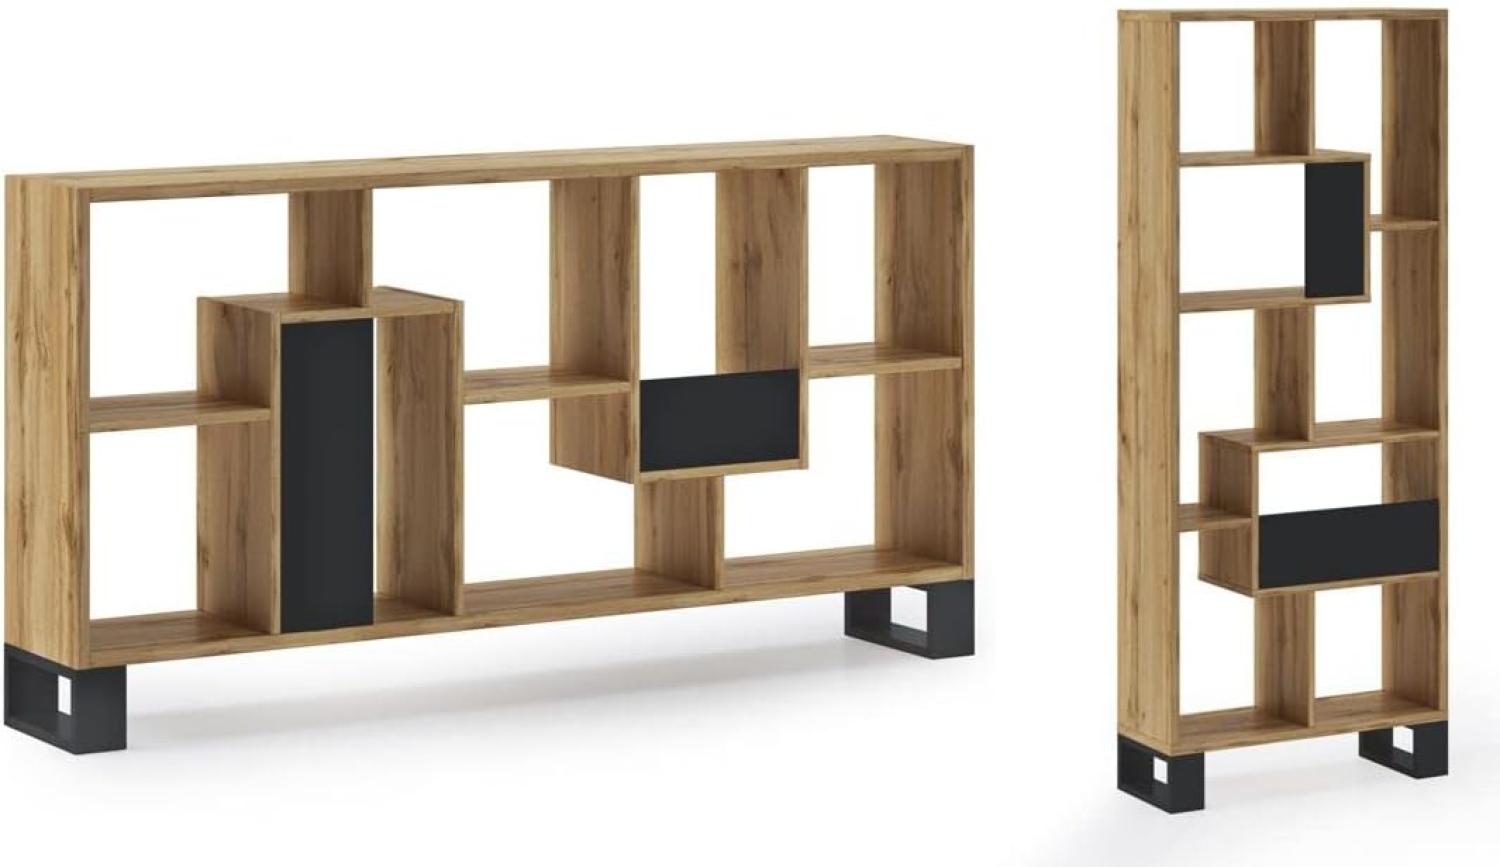 Skraut Home – Designregal – 168 x 69 x 25 cm – vertikal oder horizontal – Zick-Zack-Loft-Modell – einfache Montage – widerstandsfähig – dunkle Eiche und schwarzes Holz Bild 1